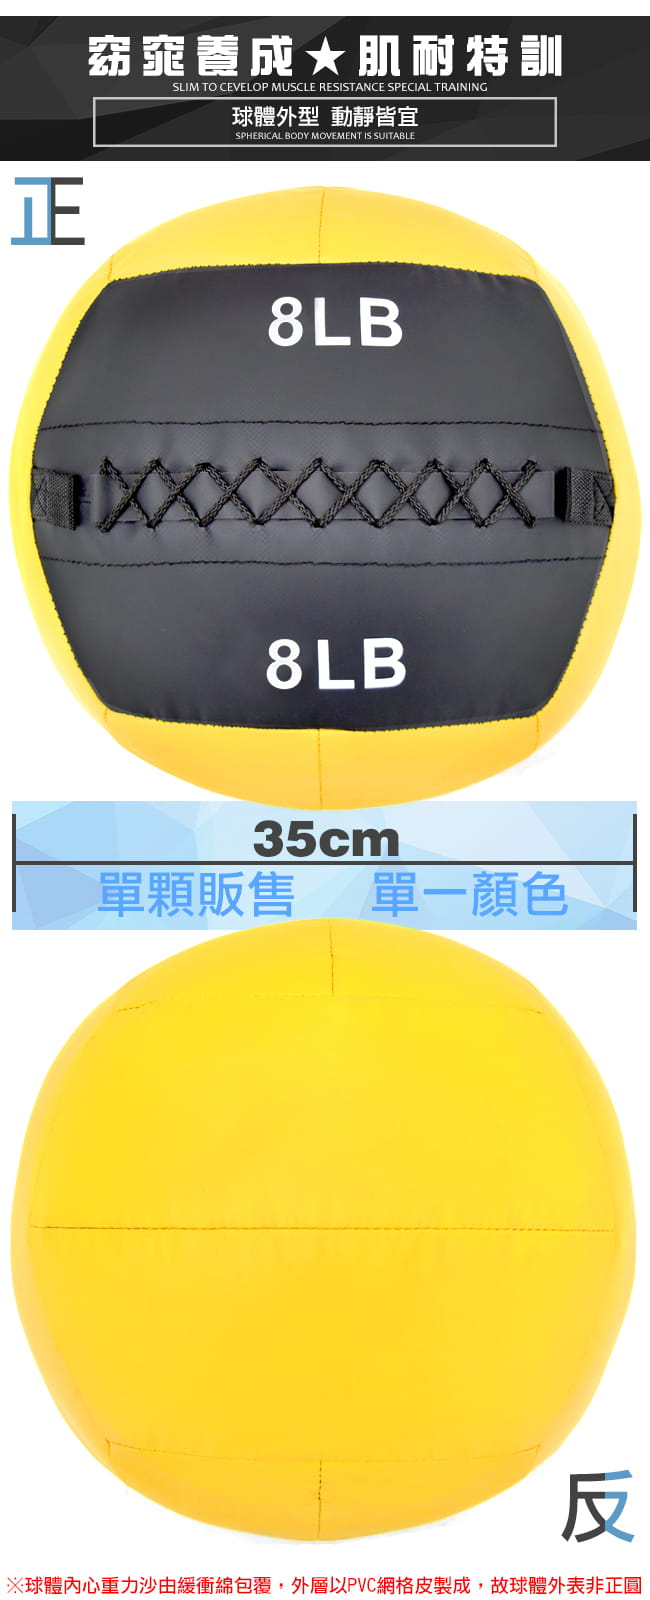 負重力8LB軟式藥球   3.6KG舉重量訓練球 4